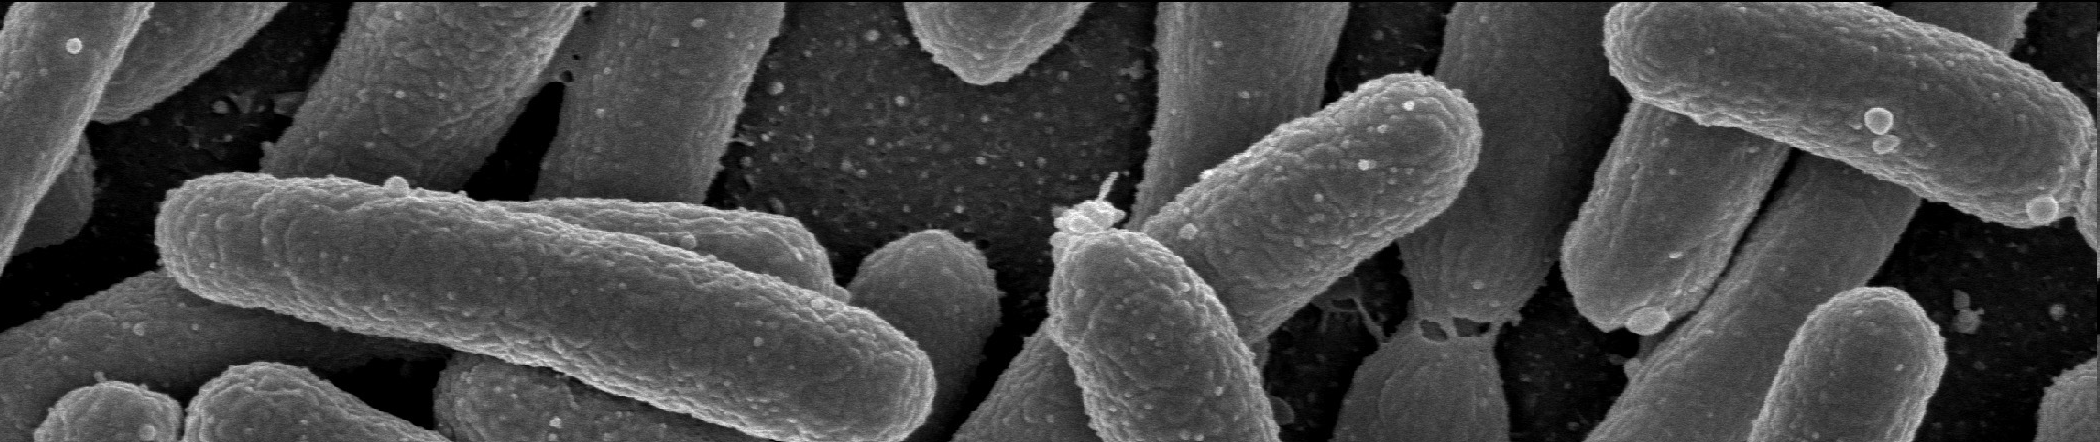 Escherichia coli Gramnegativní pohyblivá paličkovitá bakterie.